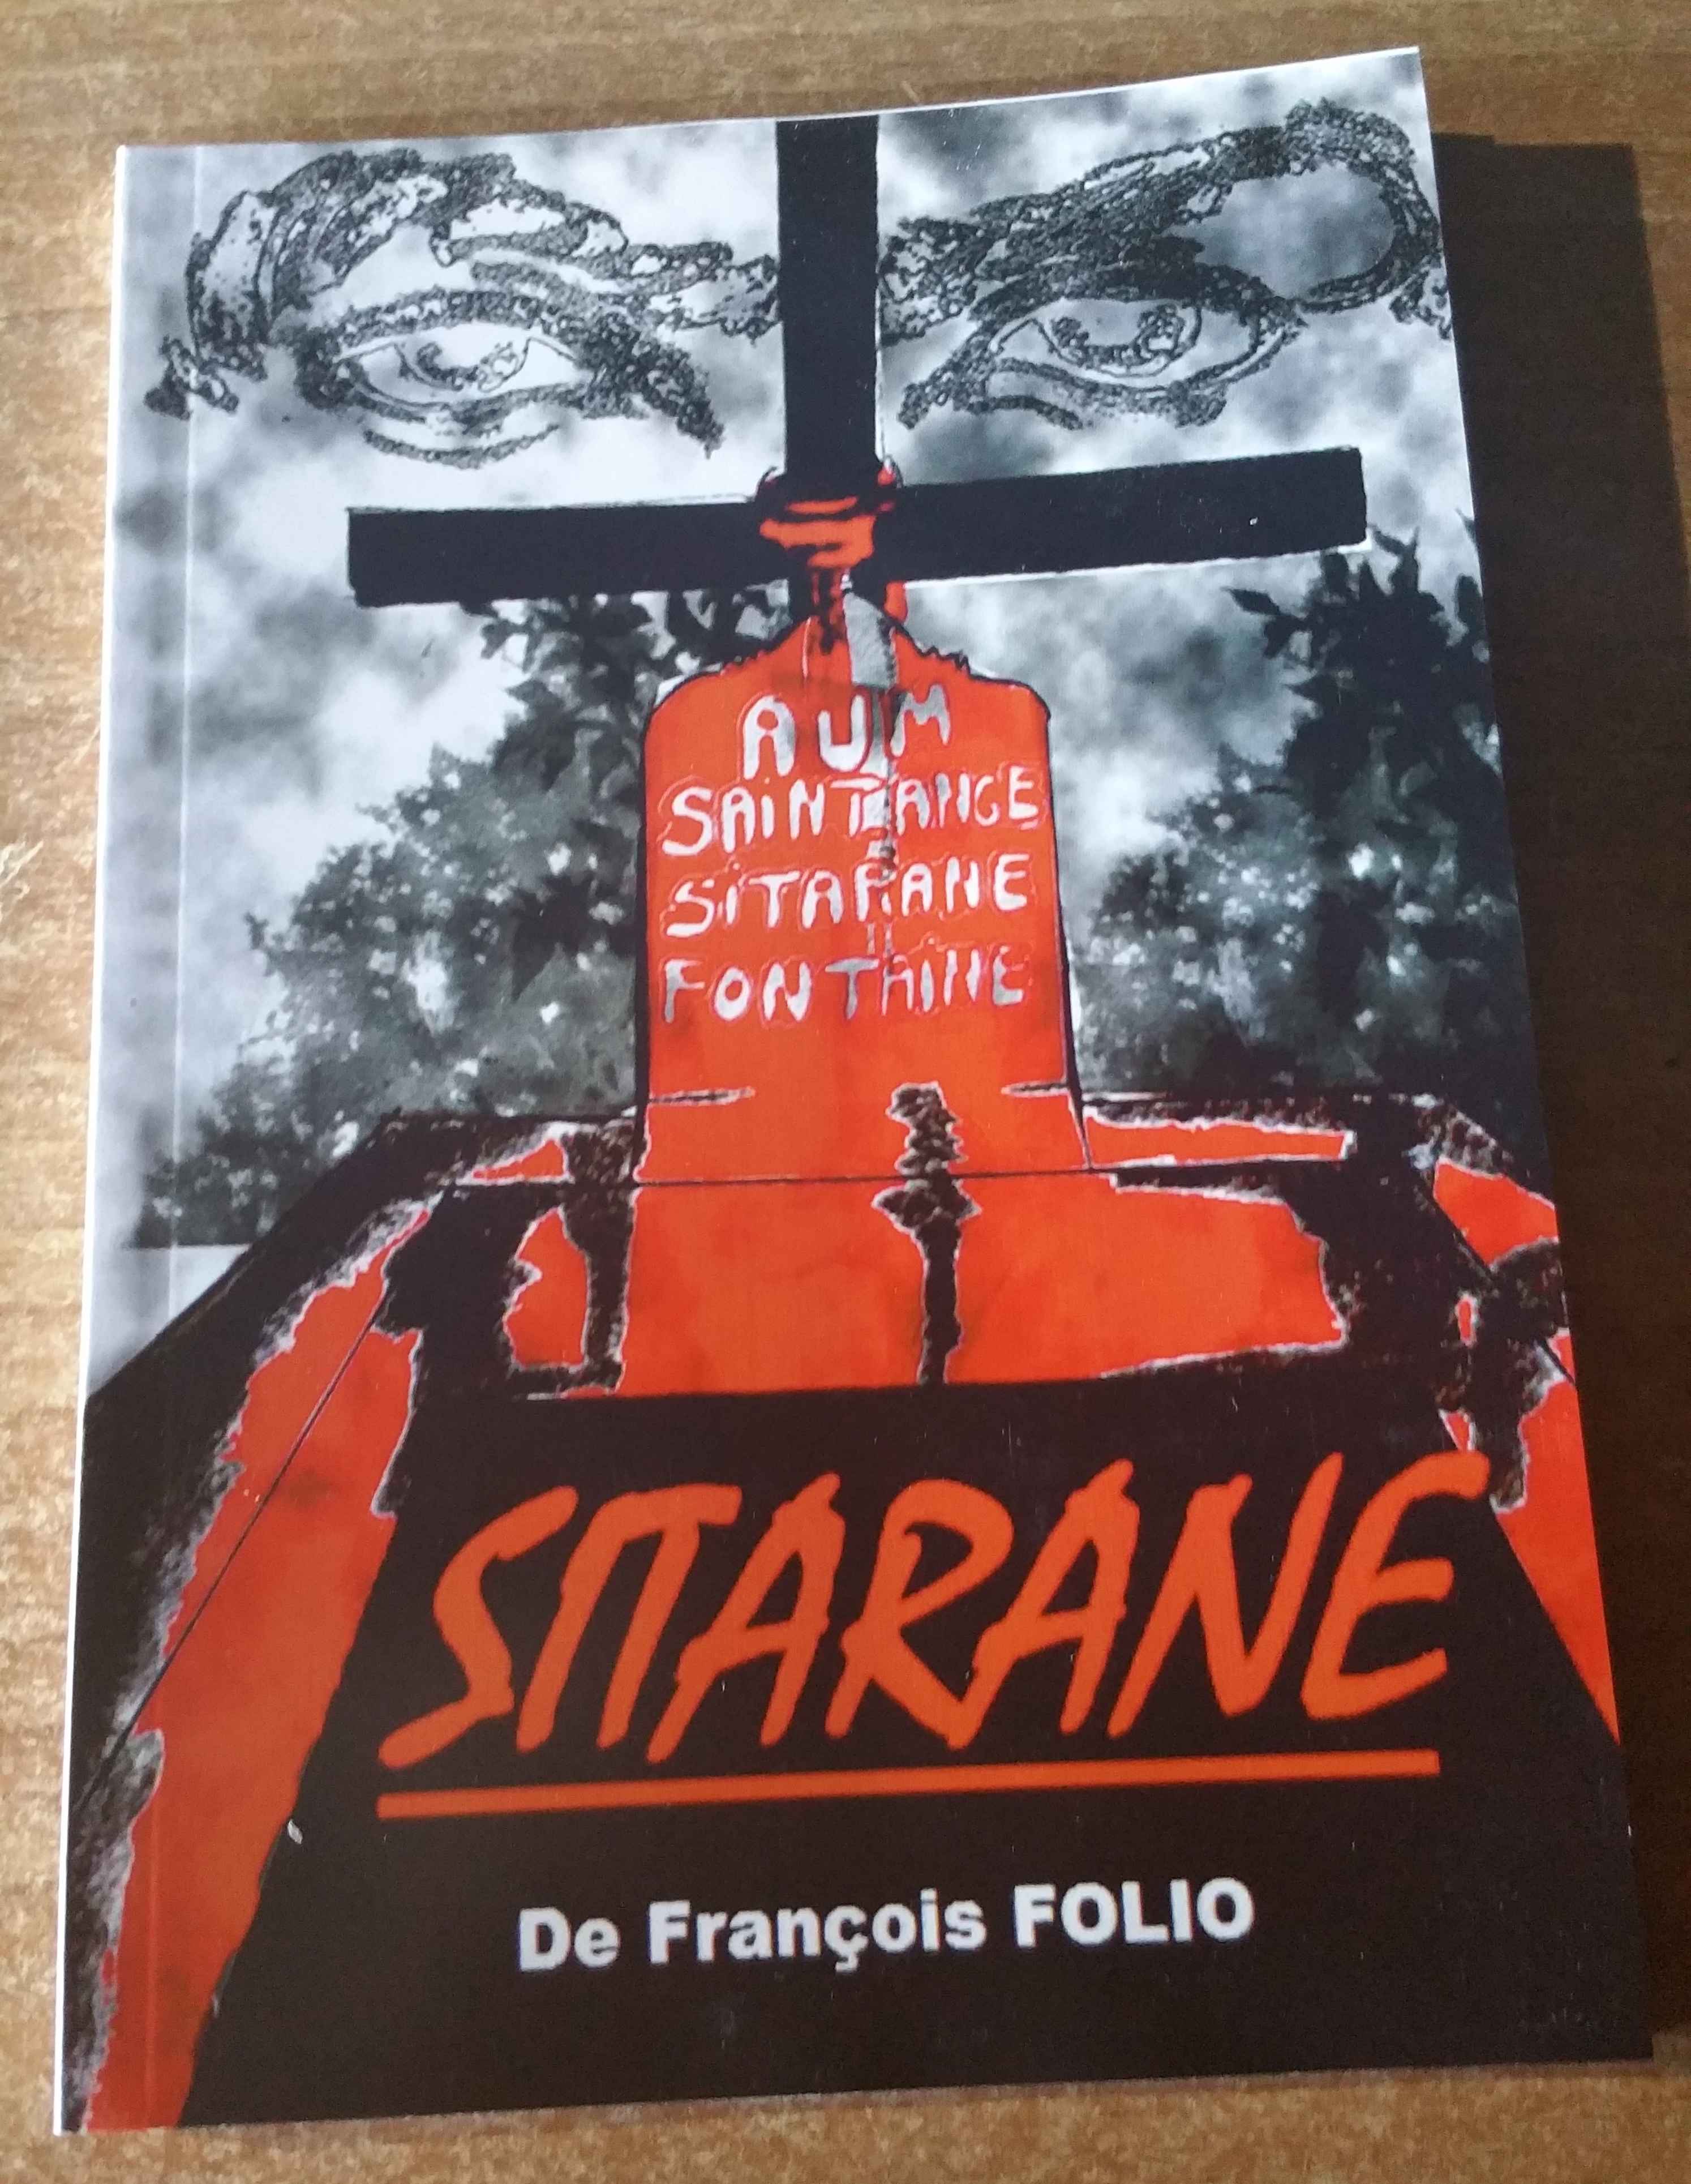 Le "Sitarane" de François Folio enfin en librairie !